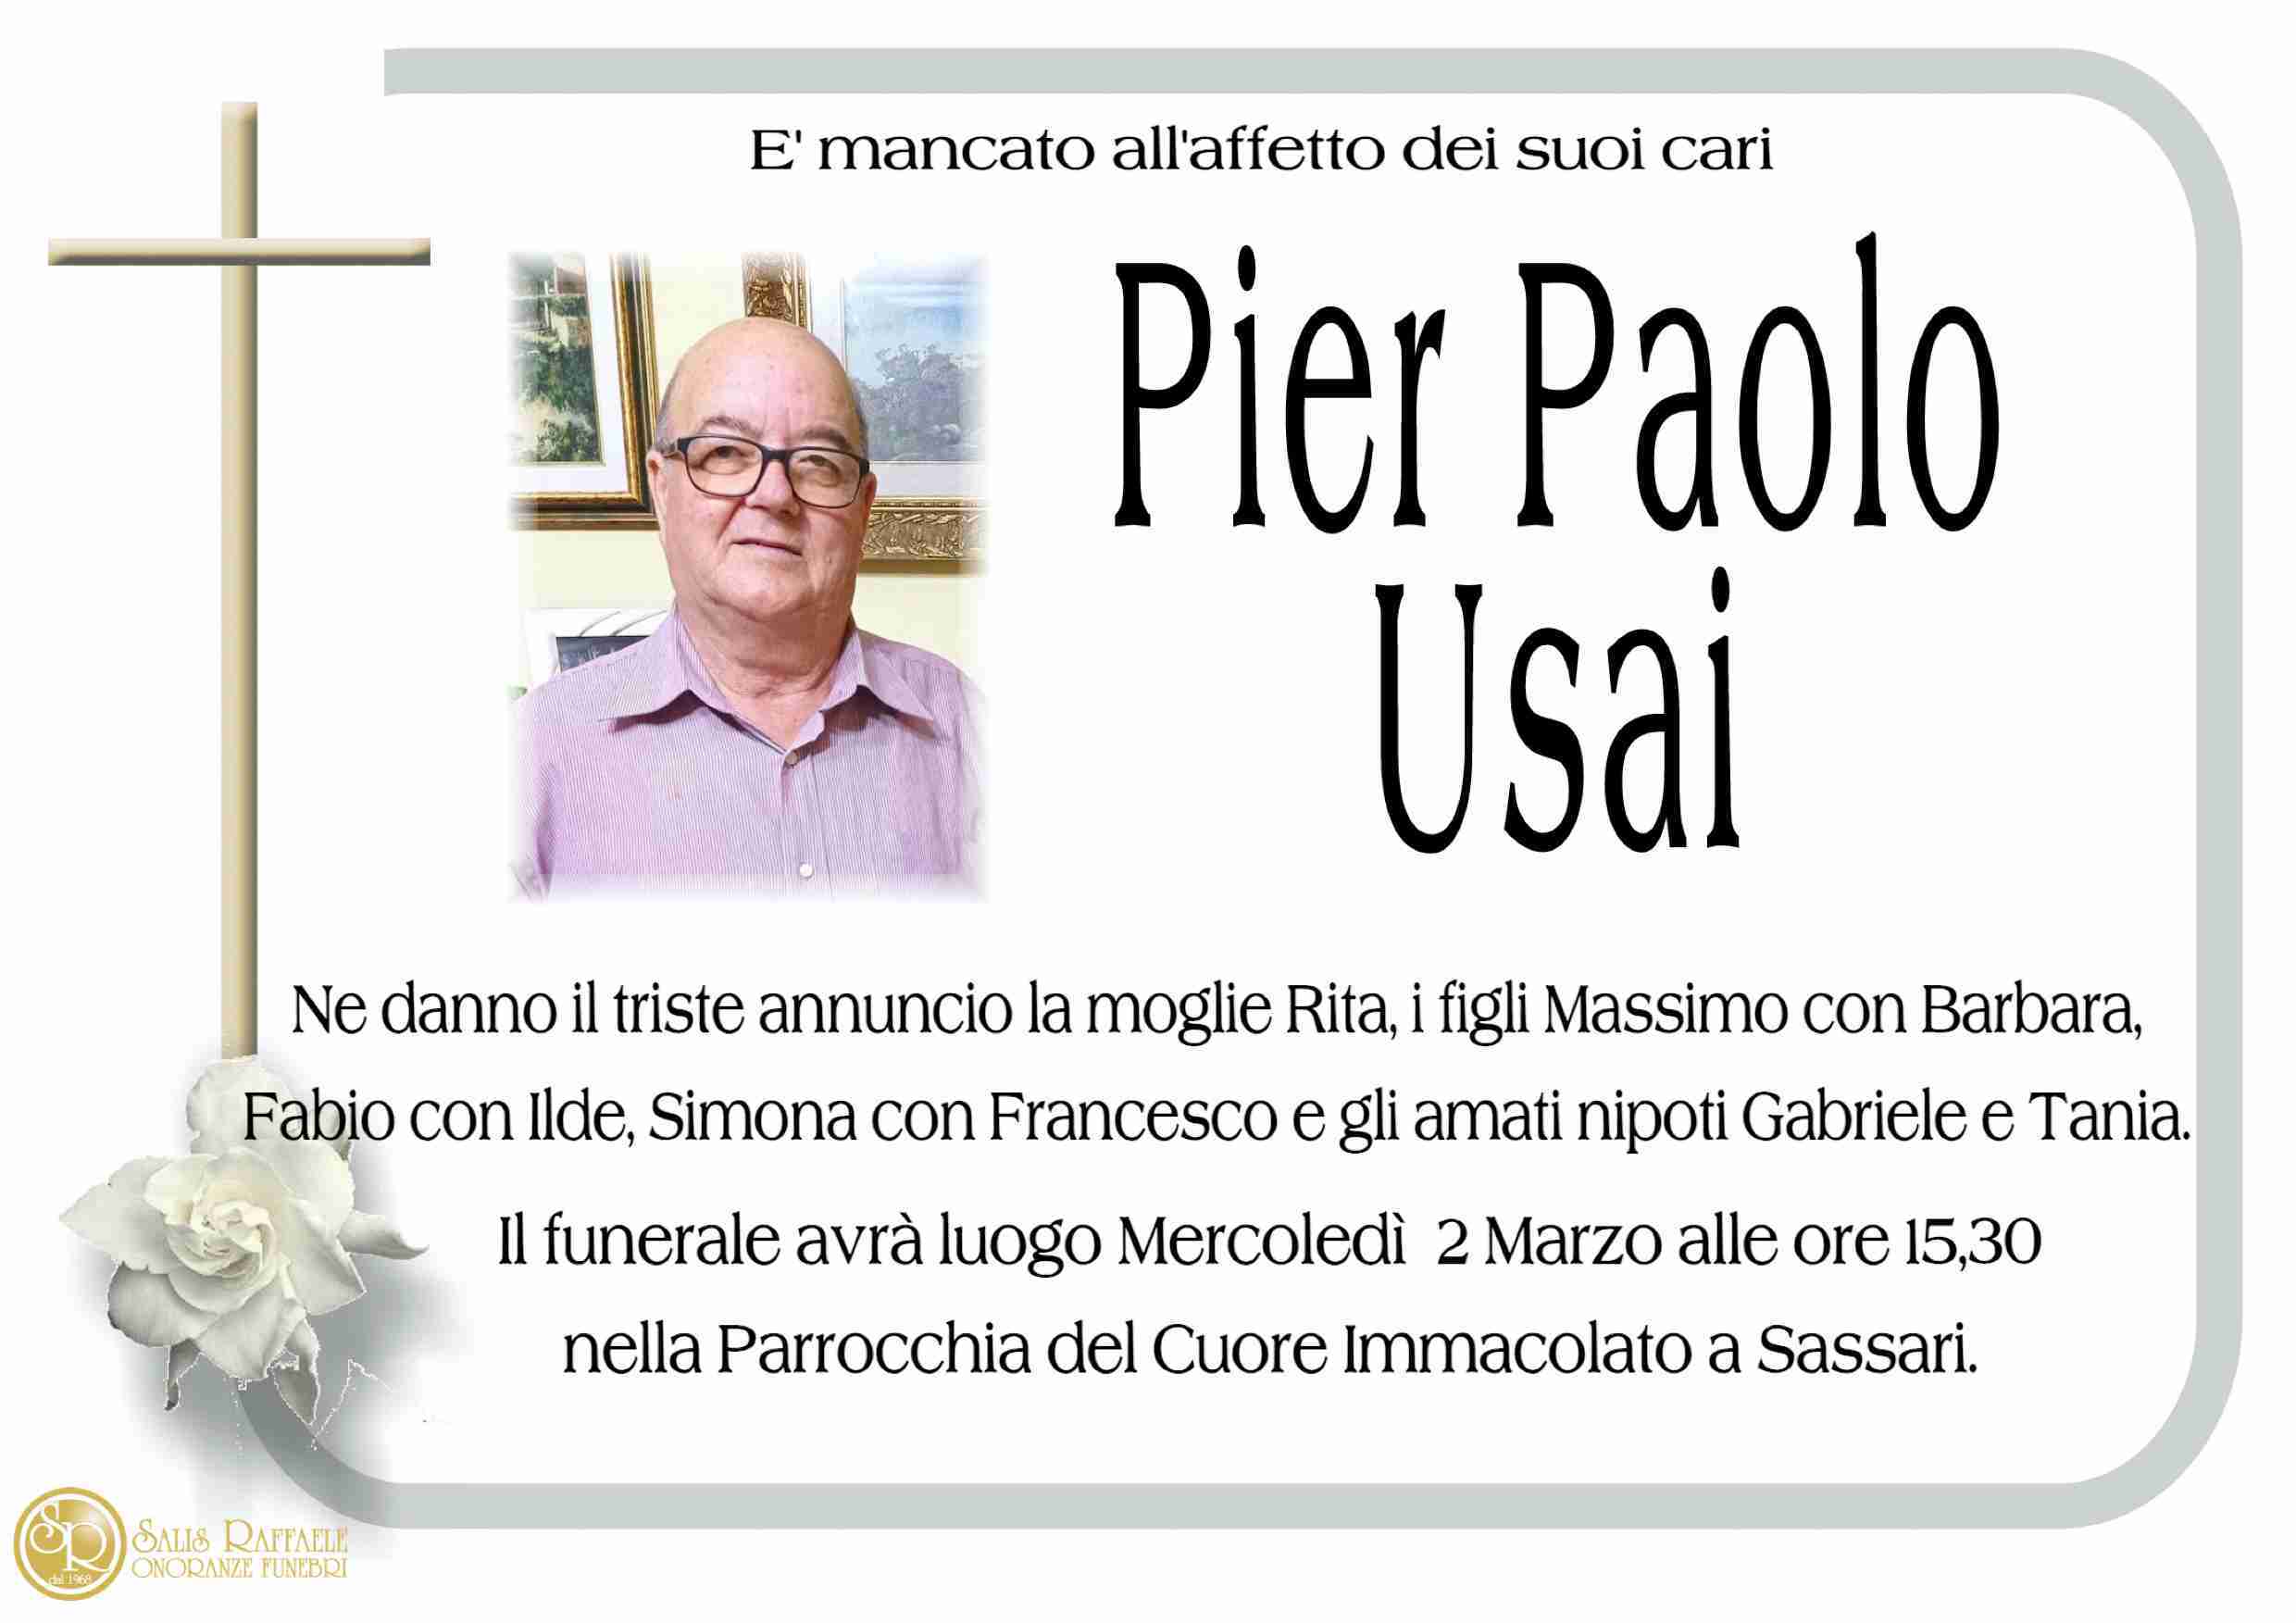 Pier Paolo Usai